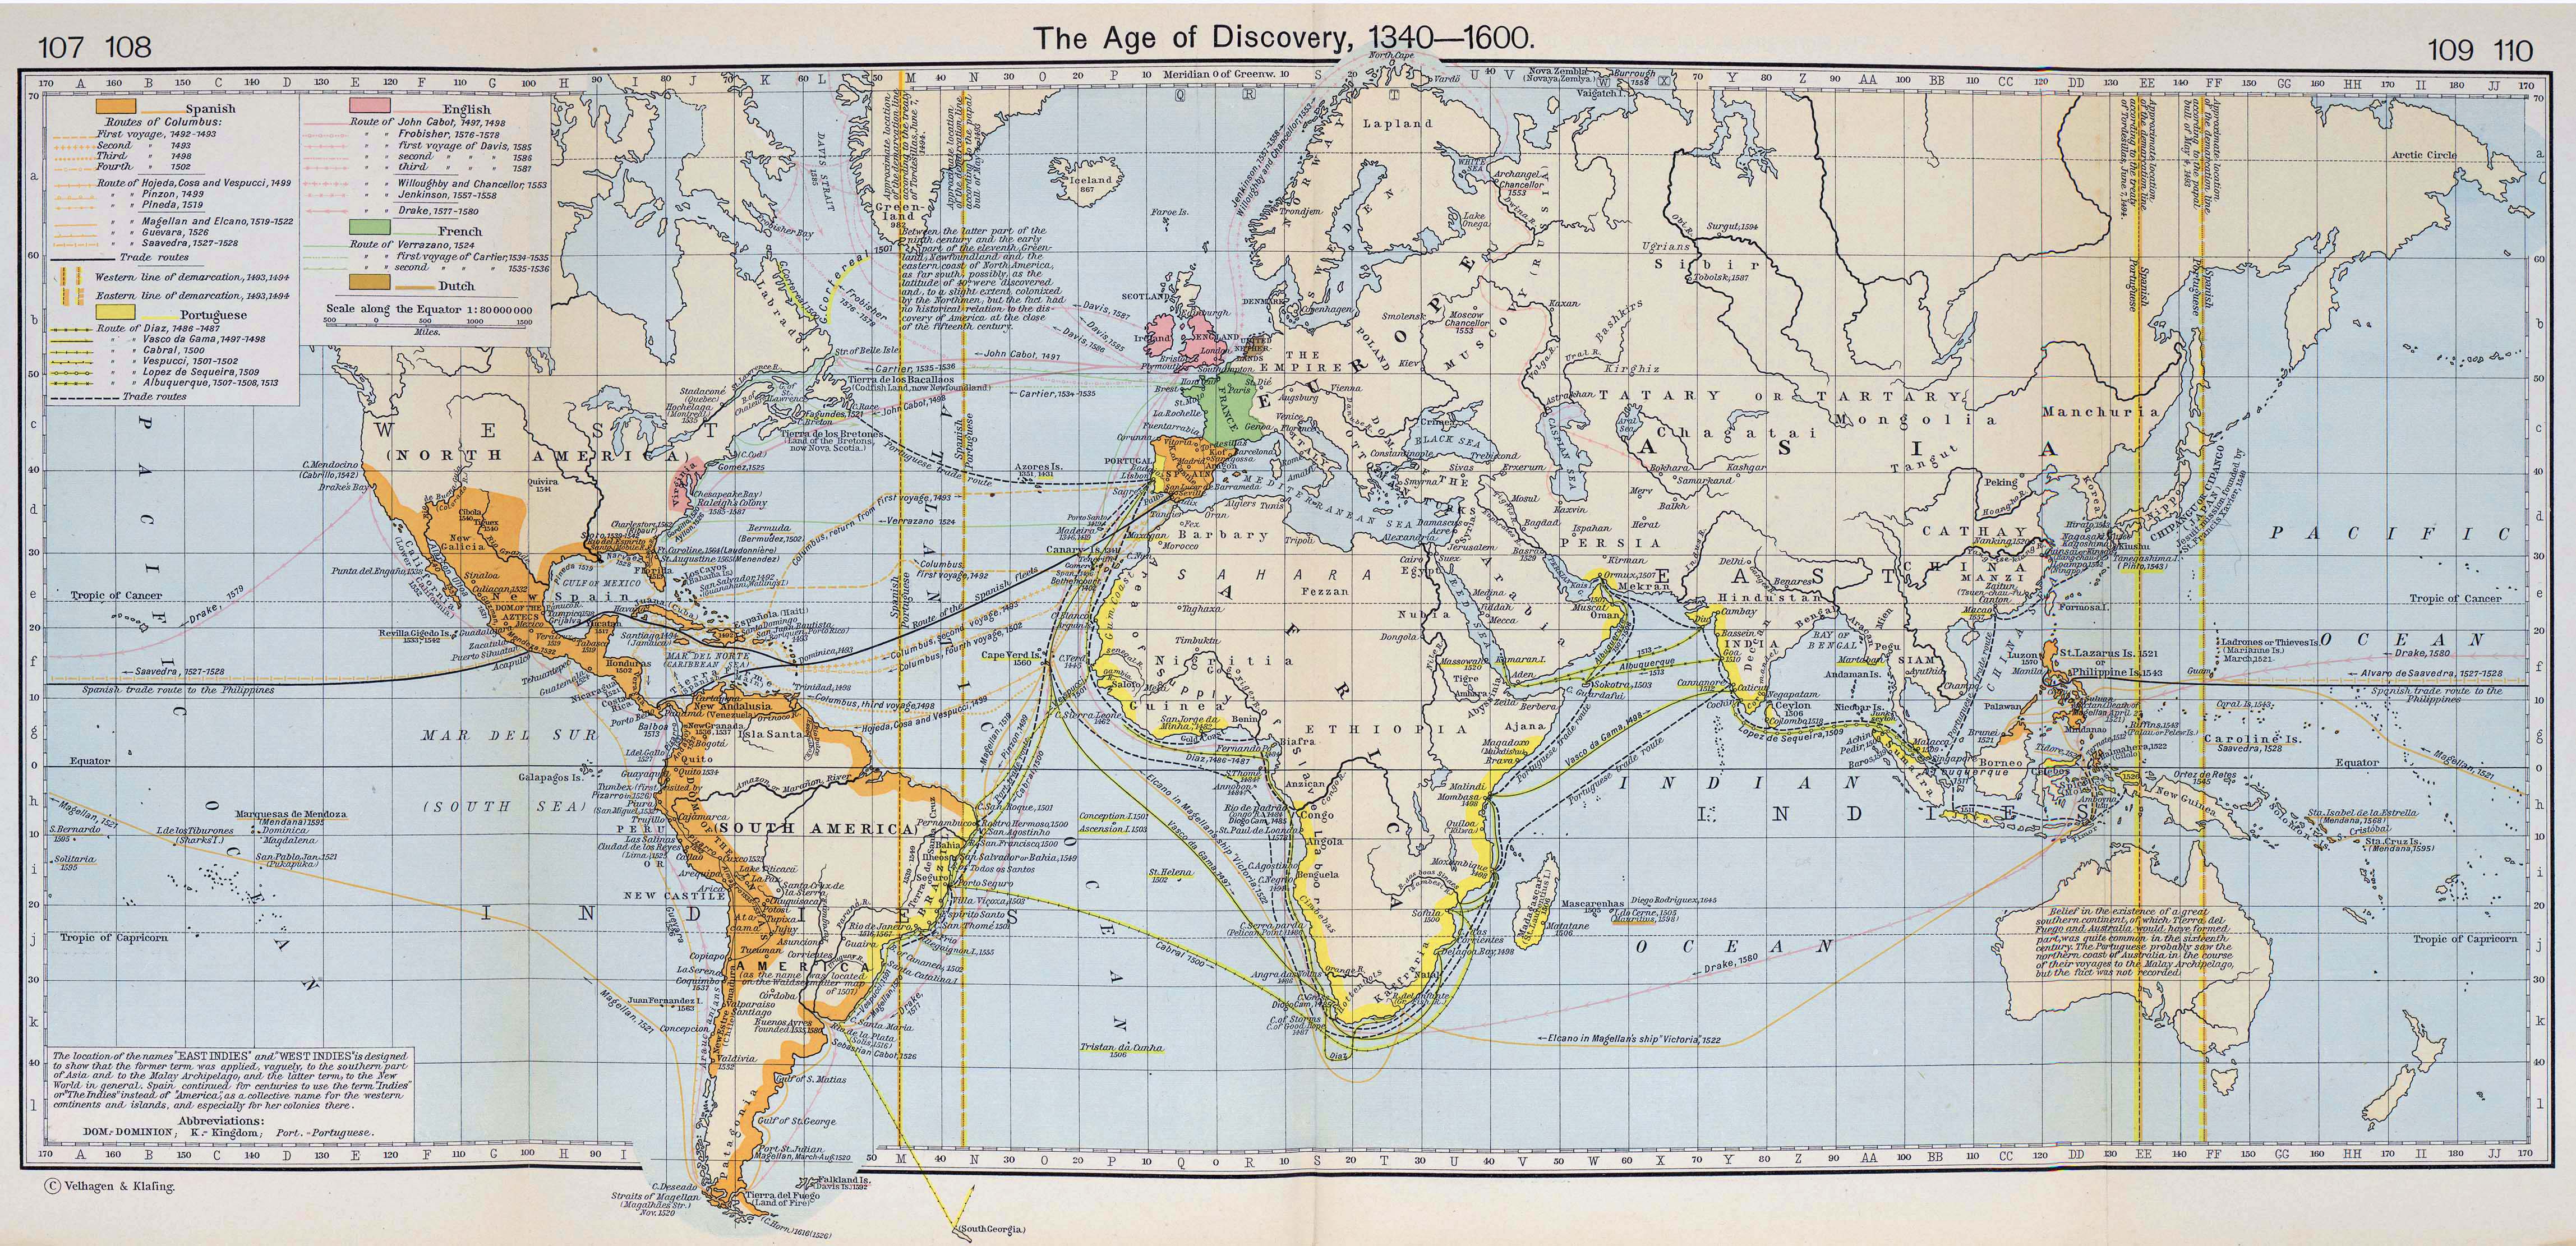 1600 map of the world World Map 1340 1600 1600 map of the world